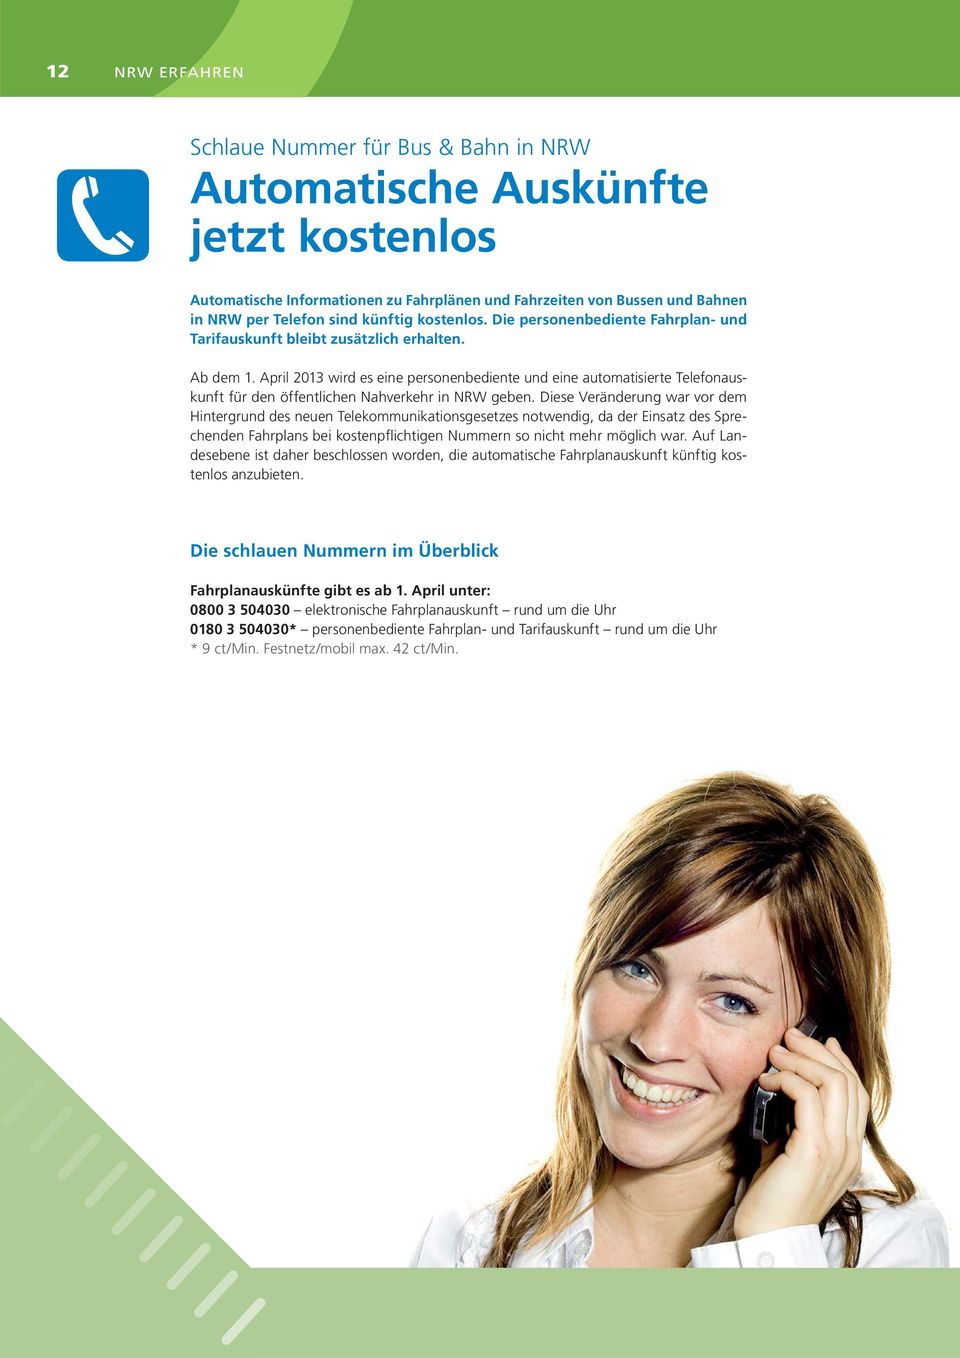 April 2013 wird es eine personenbediente und eine automatisierte Telefonauskunft für den öffentlichen Nahverkehr in NRW geben.